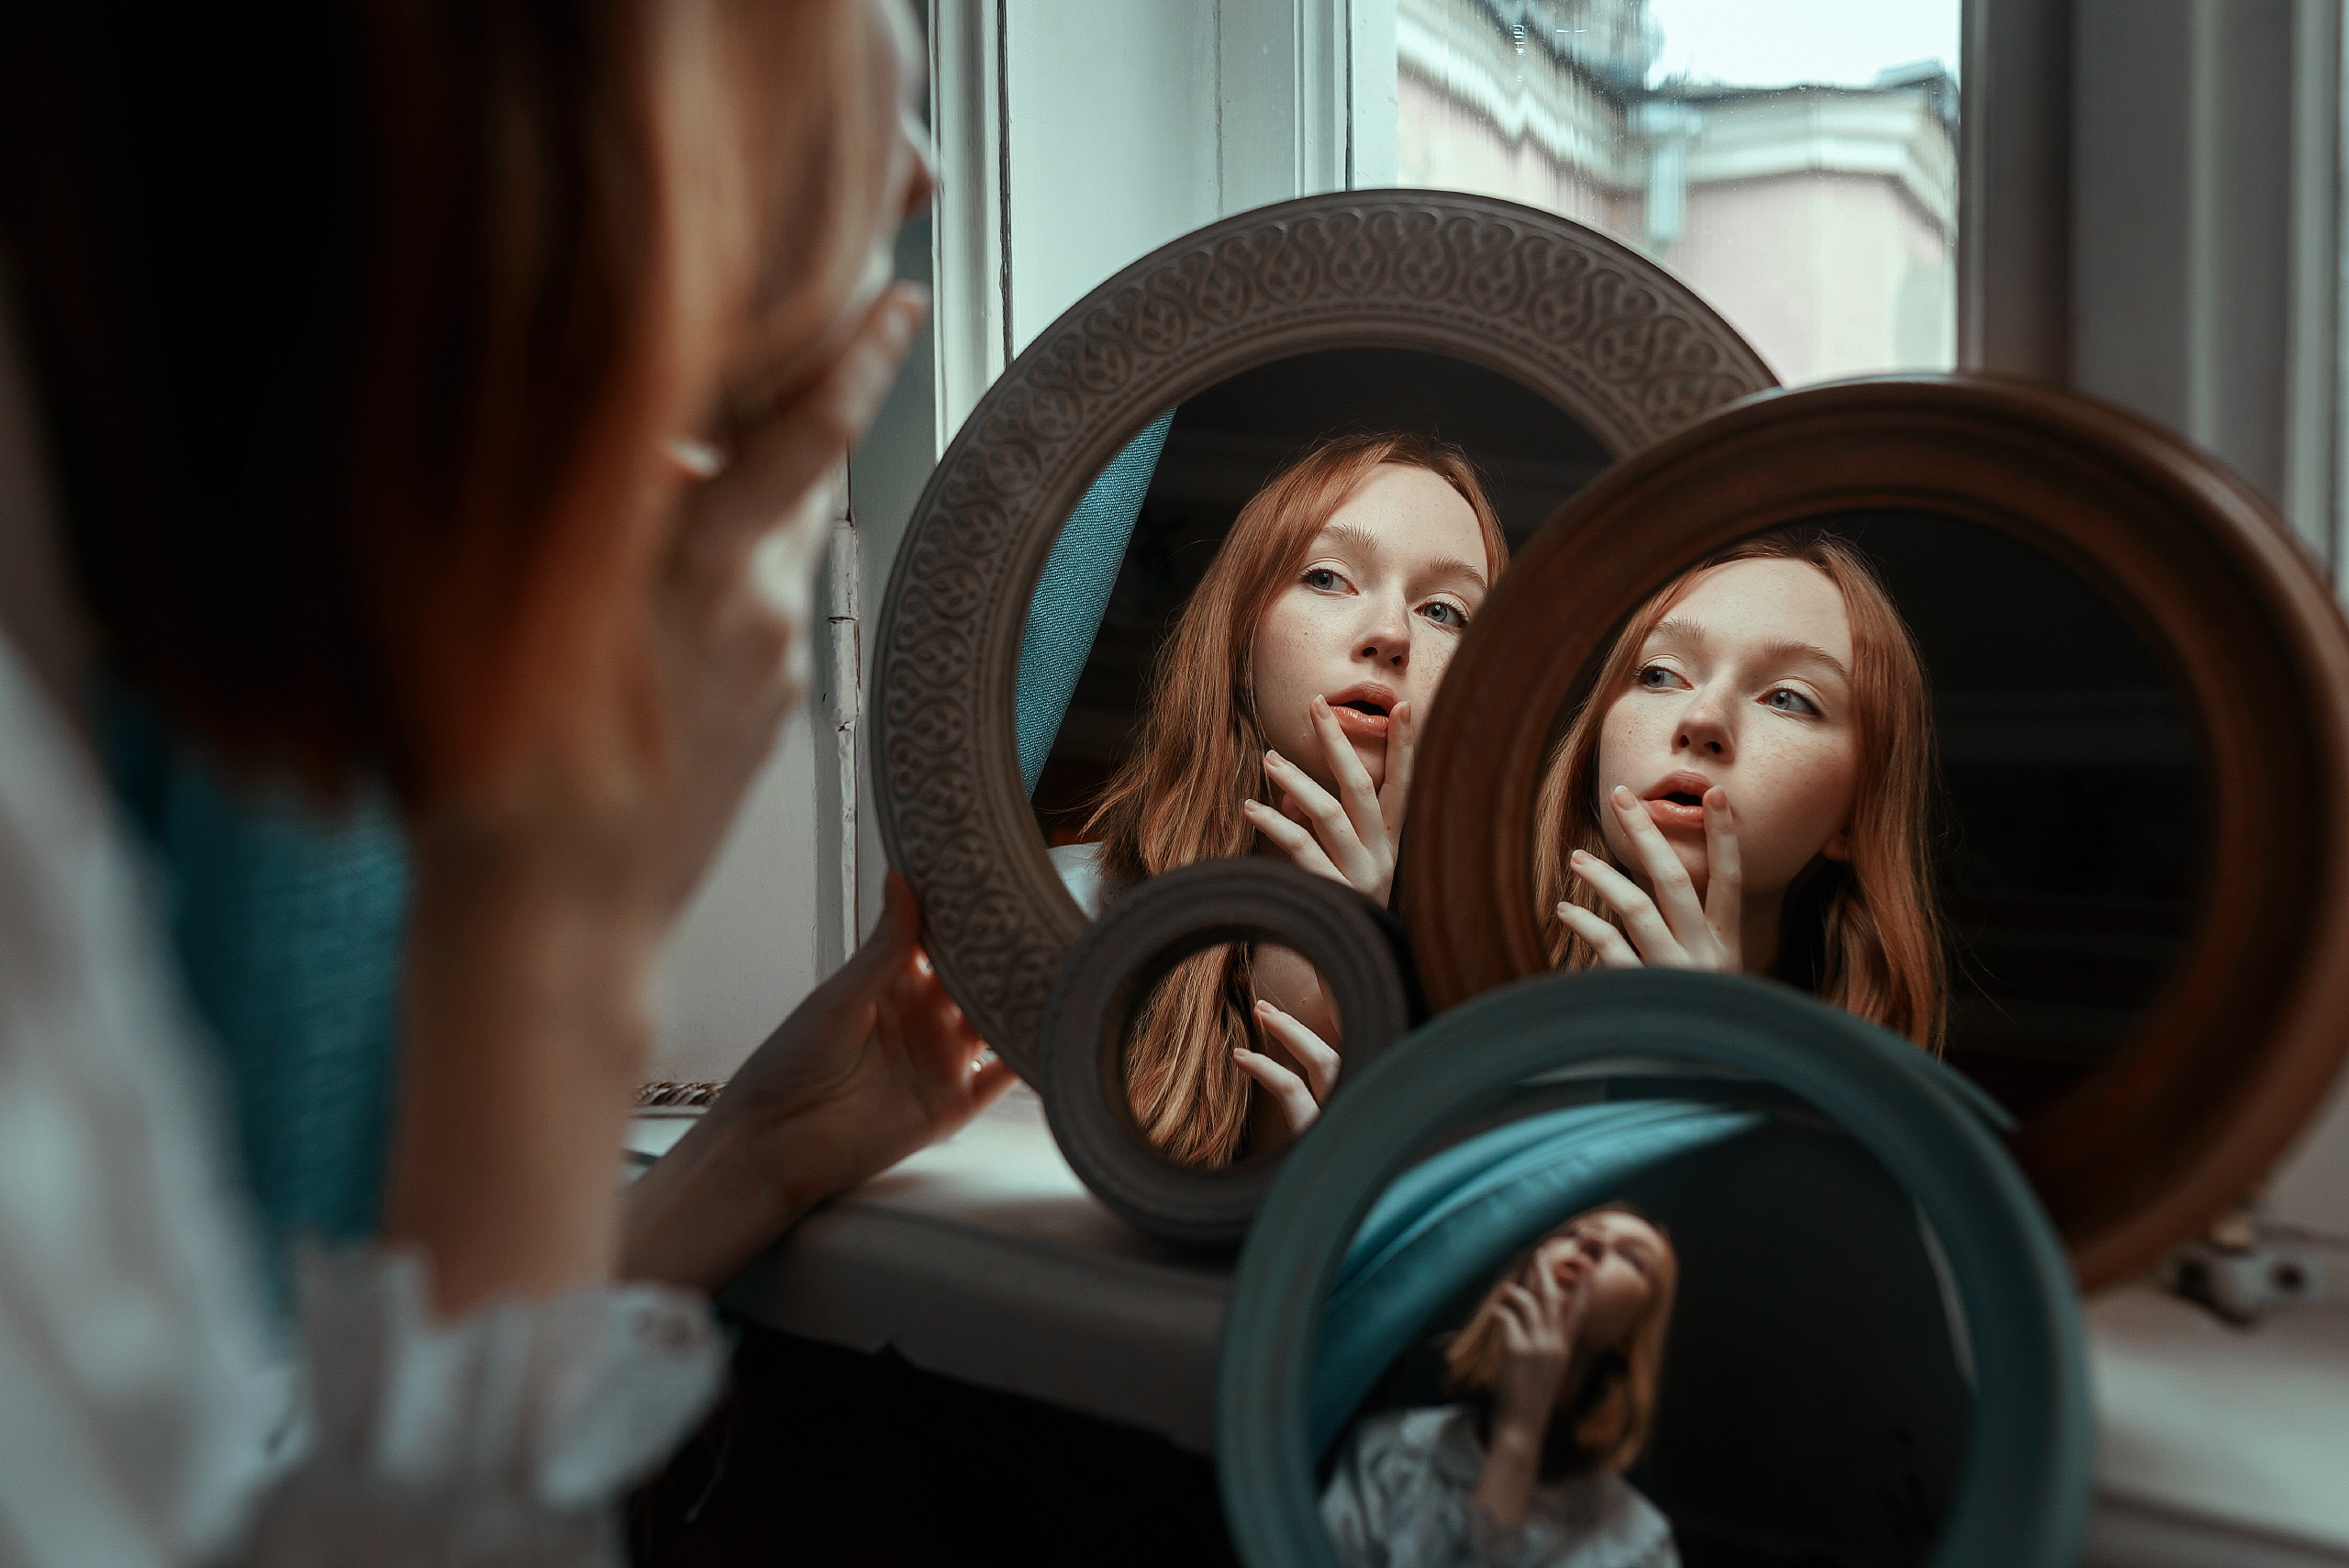 I be your mirror. Отражение в зеркале. Отражение человека в зеркале. Девушка отражается в зеркале. Разное отражение в зеркале.